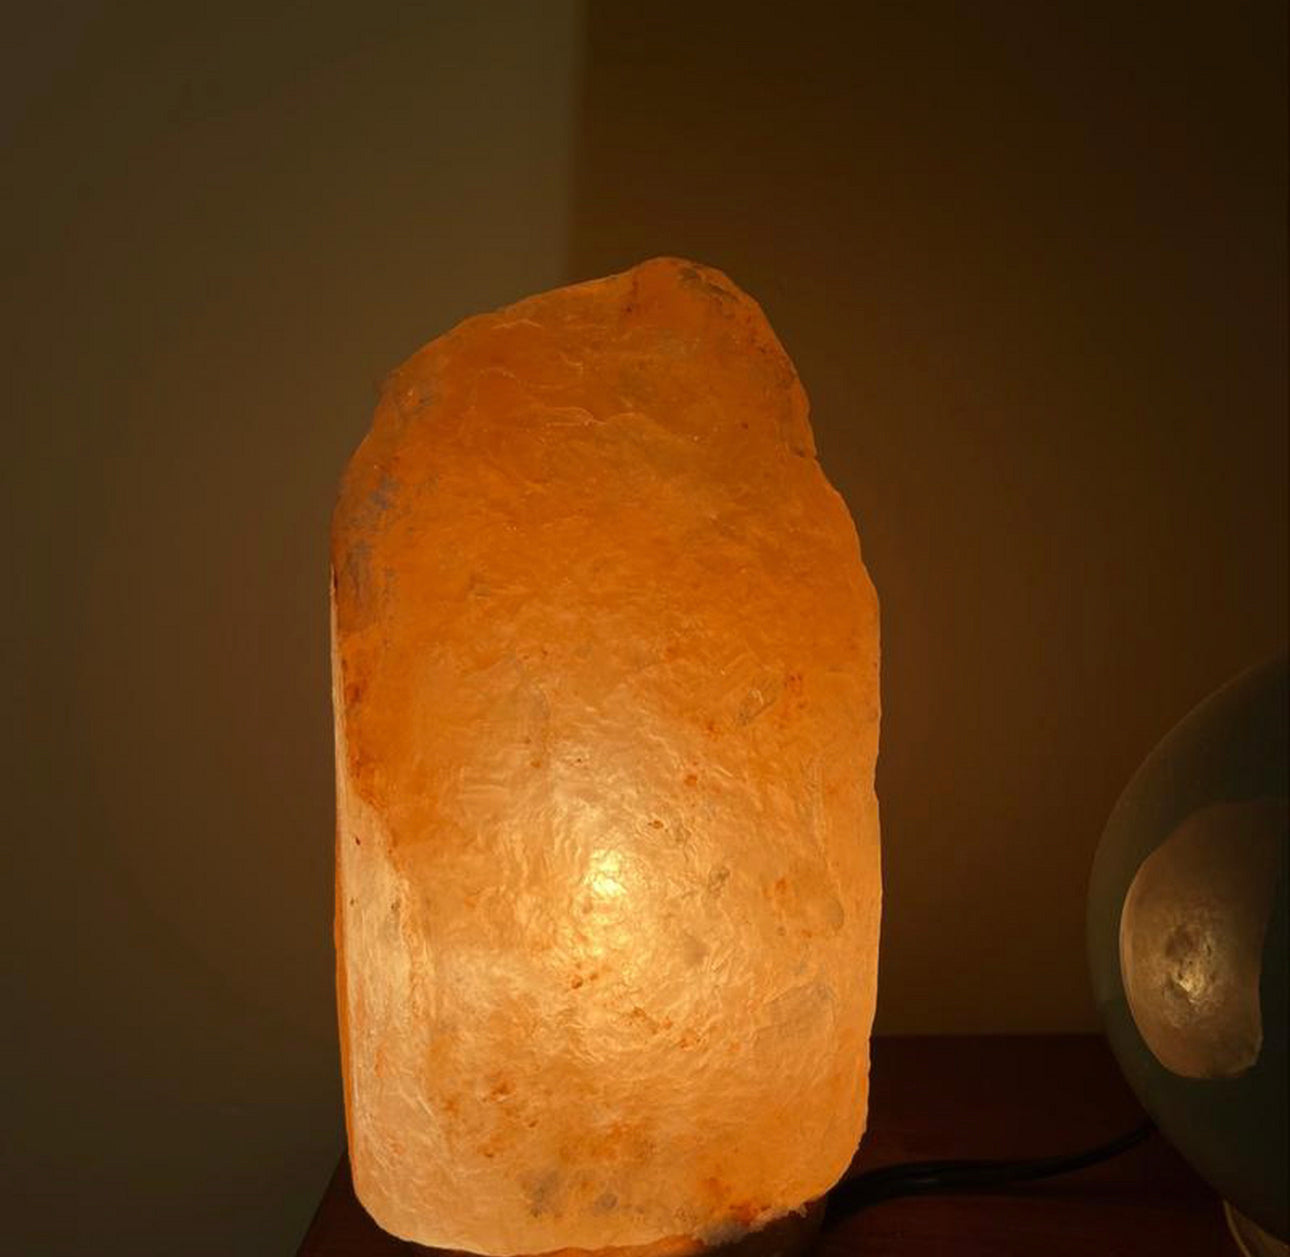 Himalayan salt Lamps